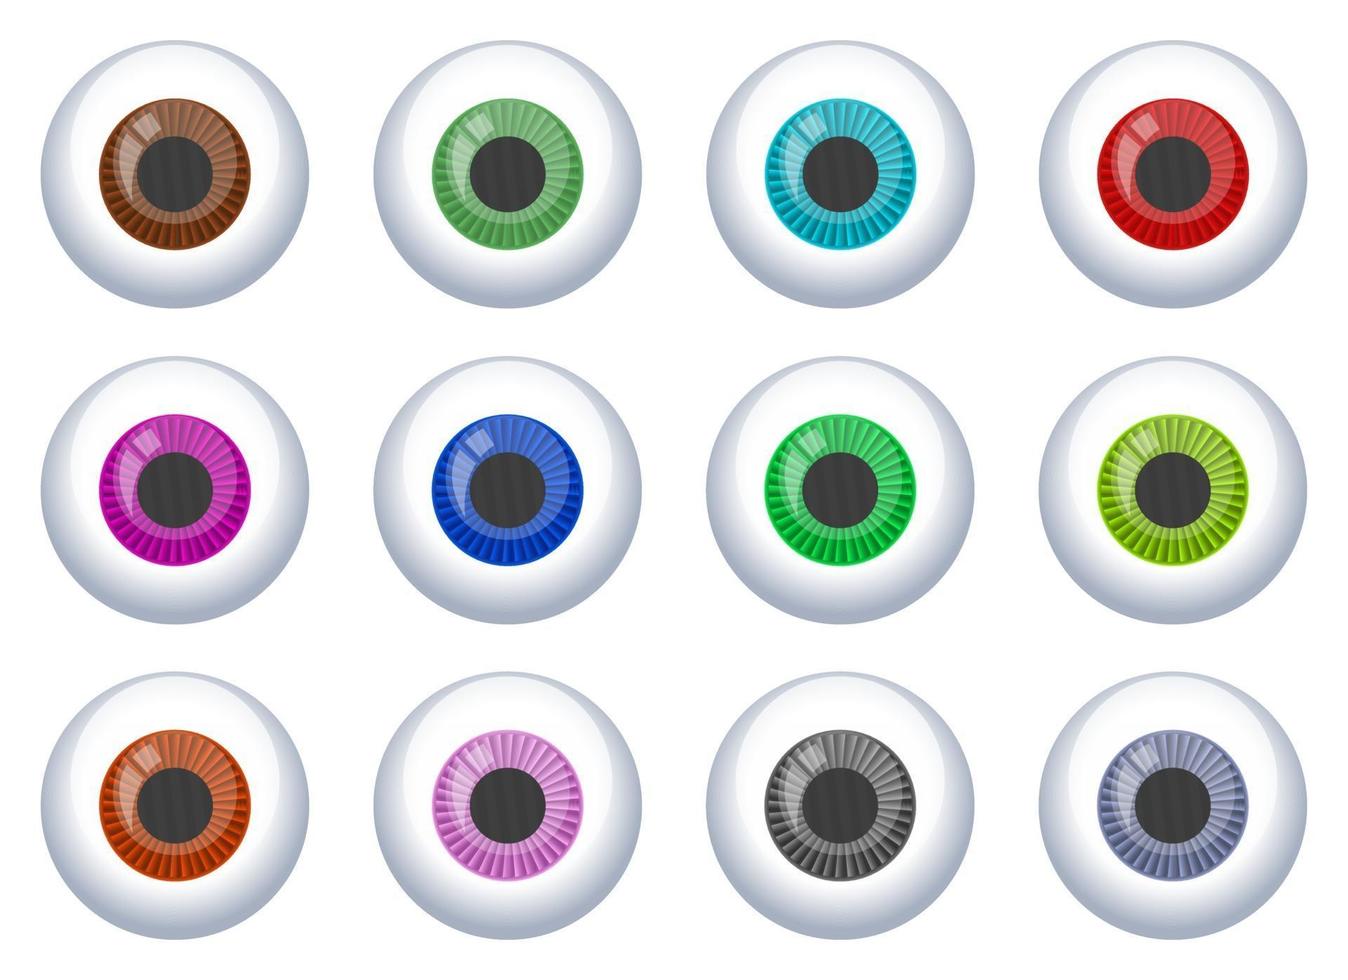 Eyeball vector design illustration set isolated on white background